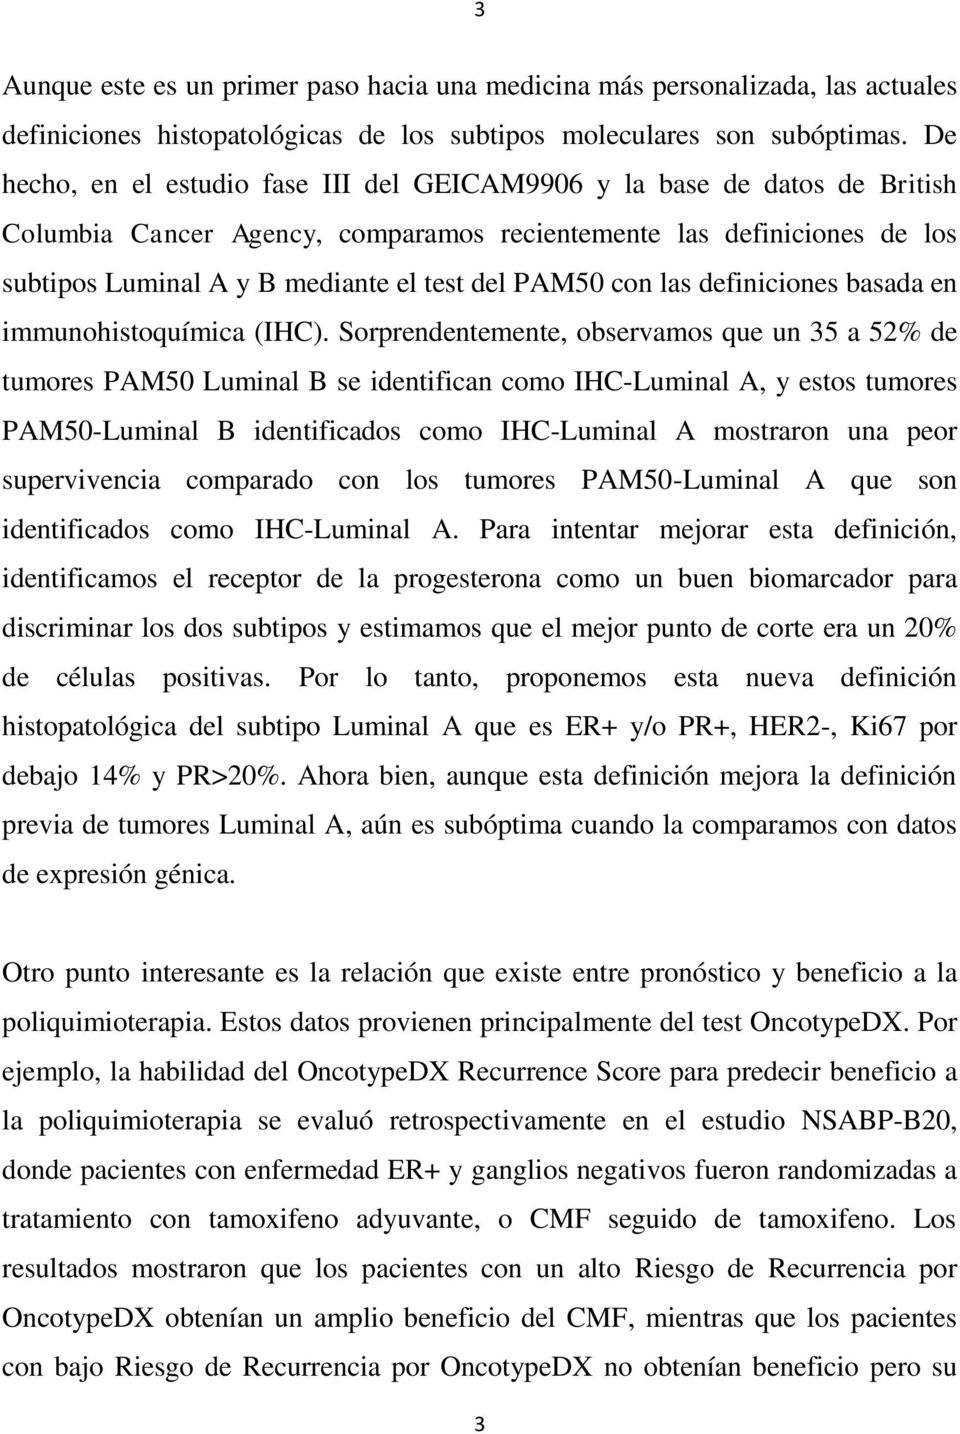 PAM50 con las definiciones basada en immunohistoquímica (IHC).